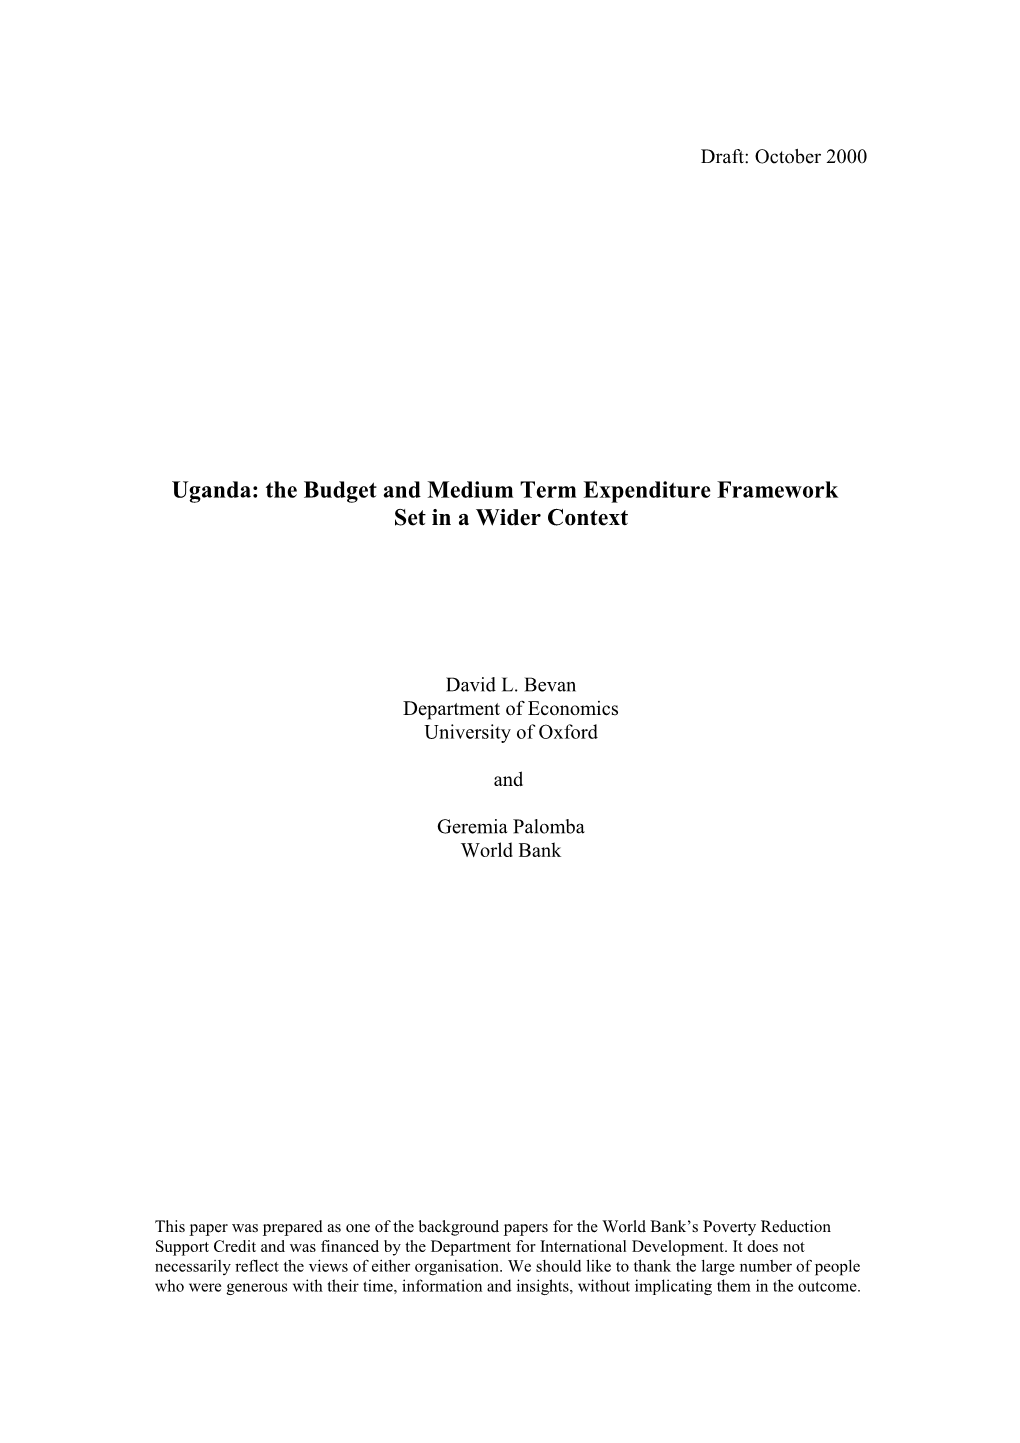 Uganda: the Budget and Medium Term Expenditure Framework